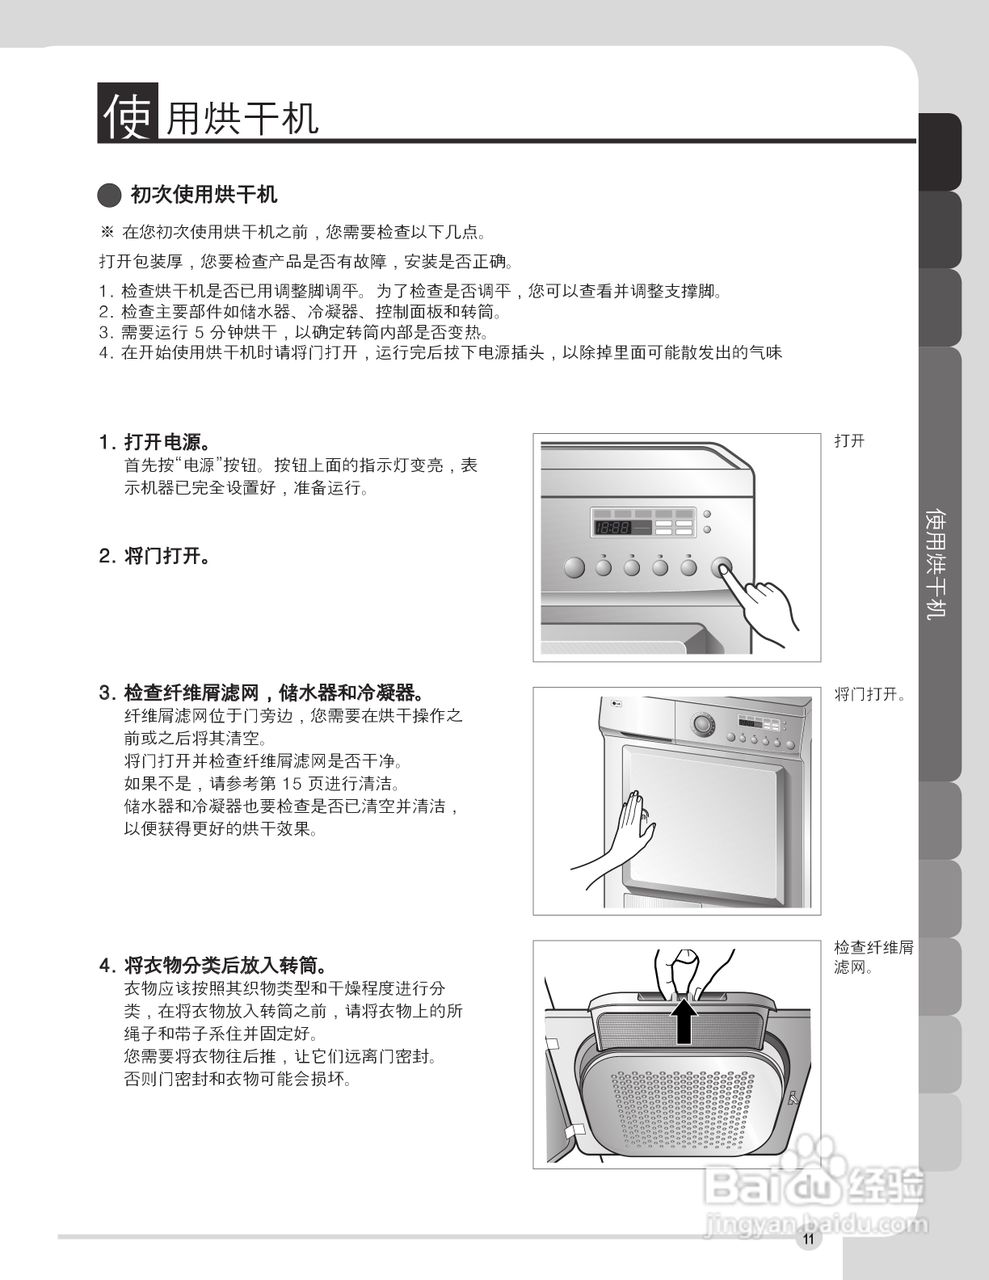 烘干机说明书图示图片